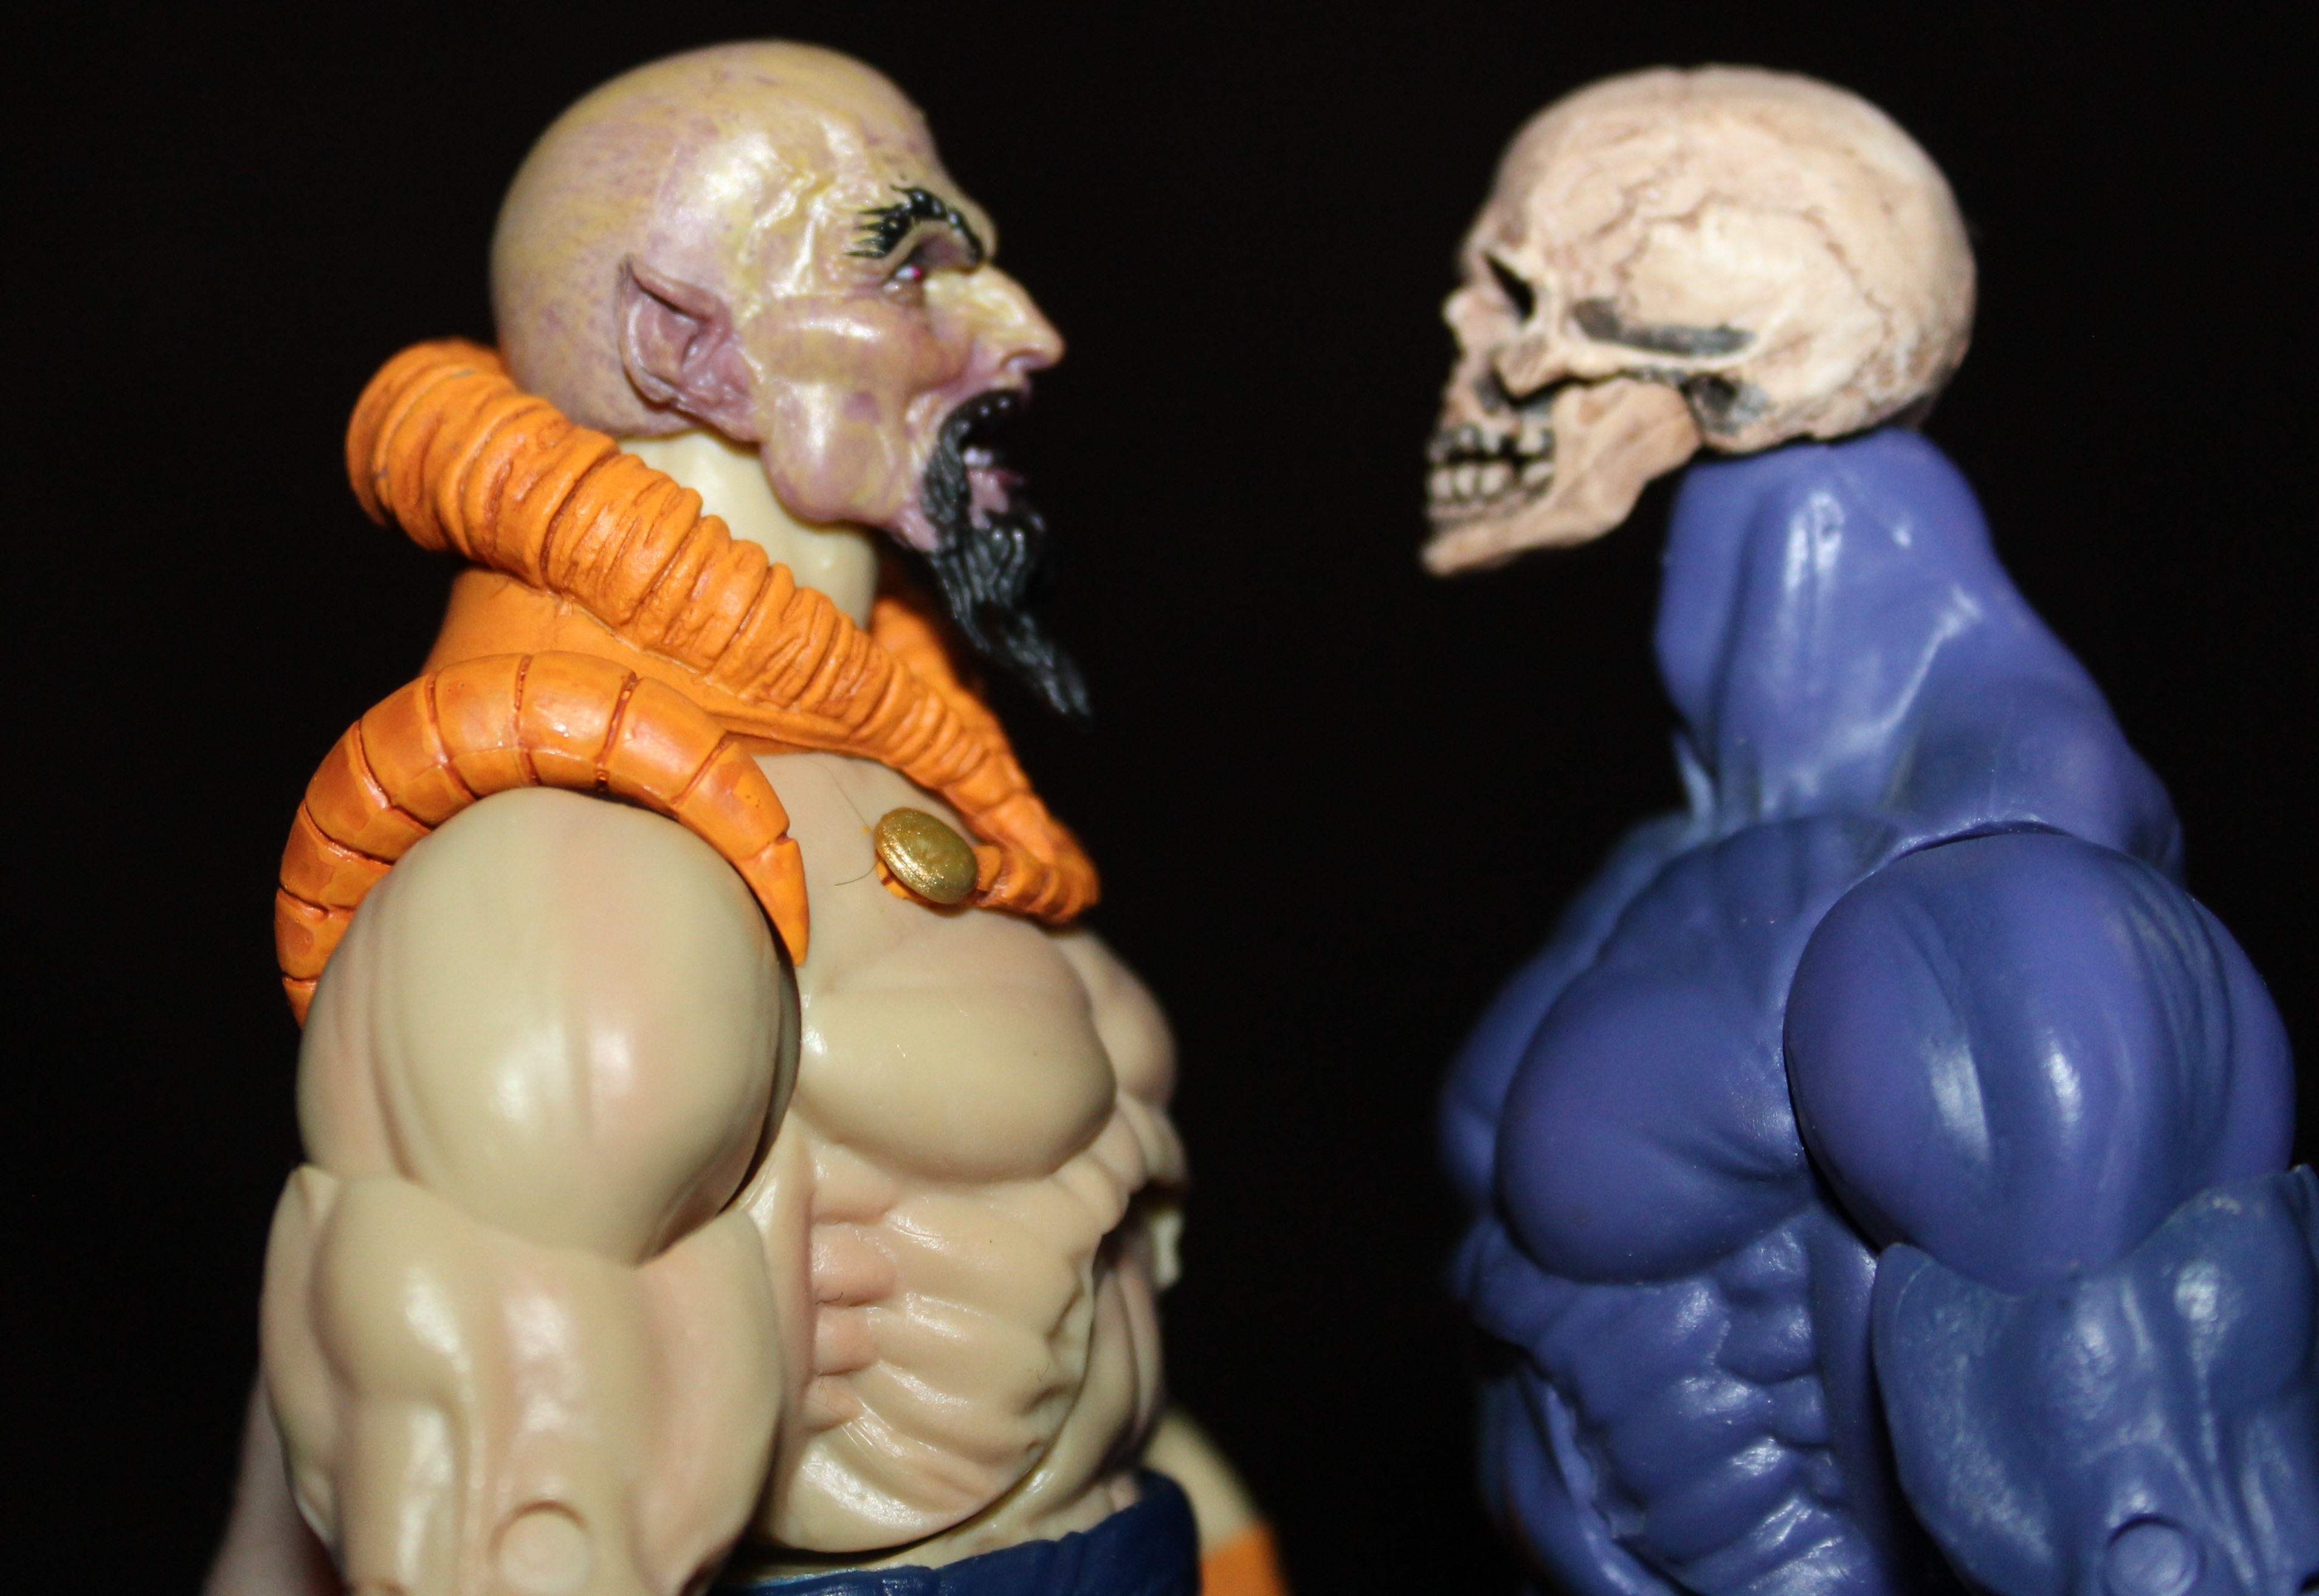 Evil vs. skull